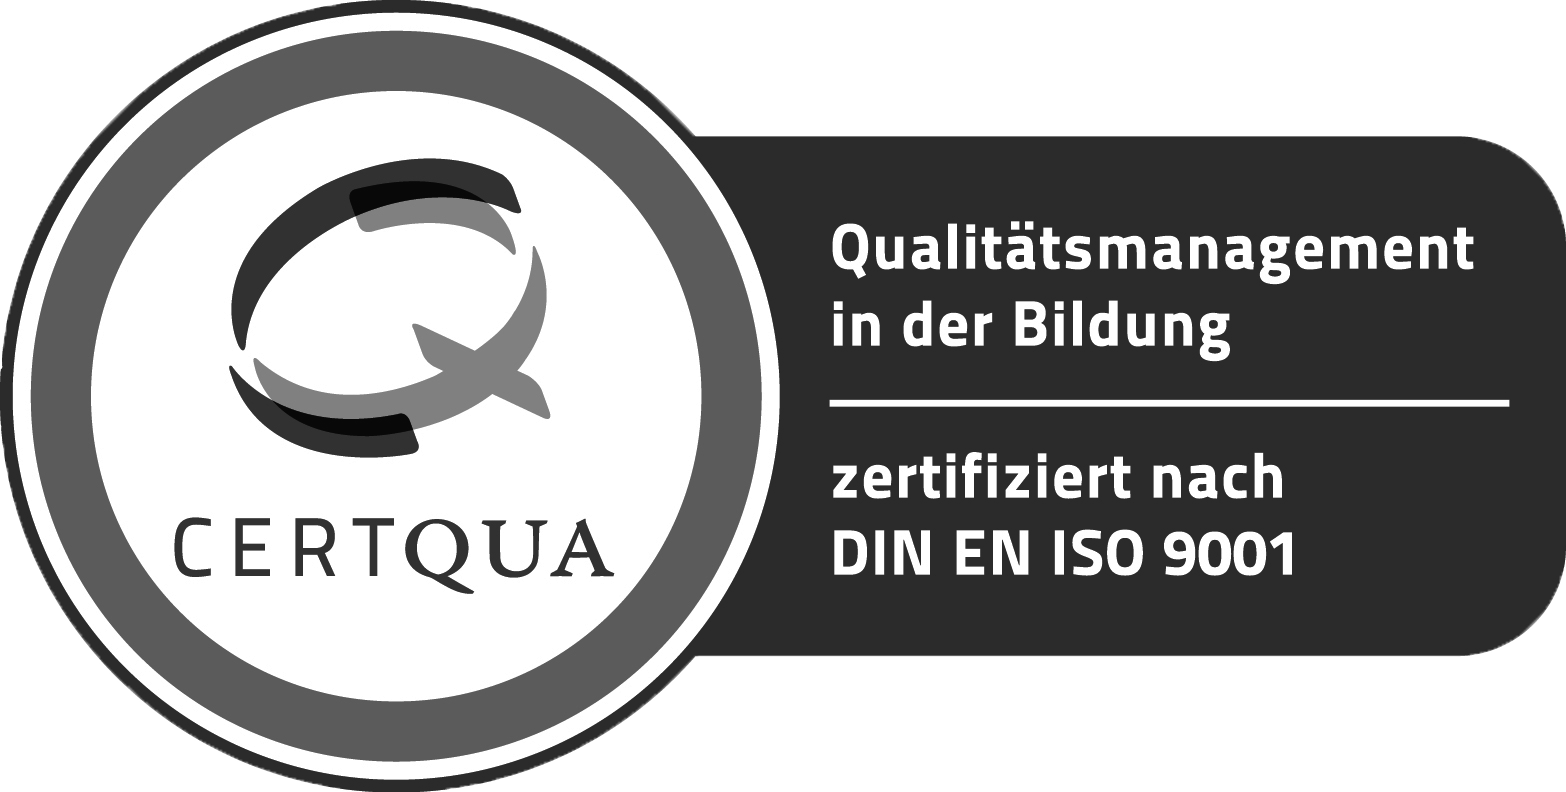 QM-Zertifizierungssiegel Certqua